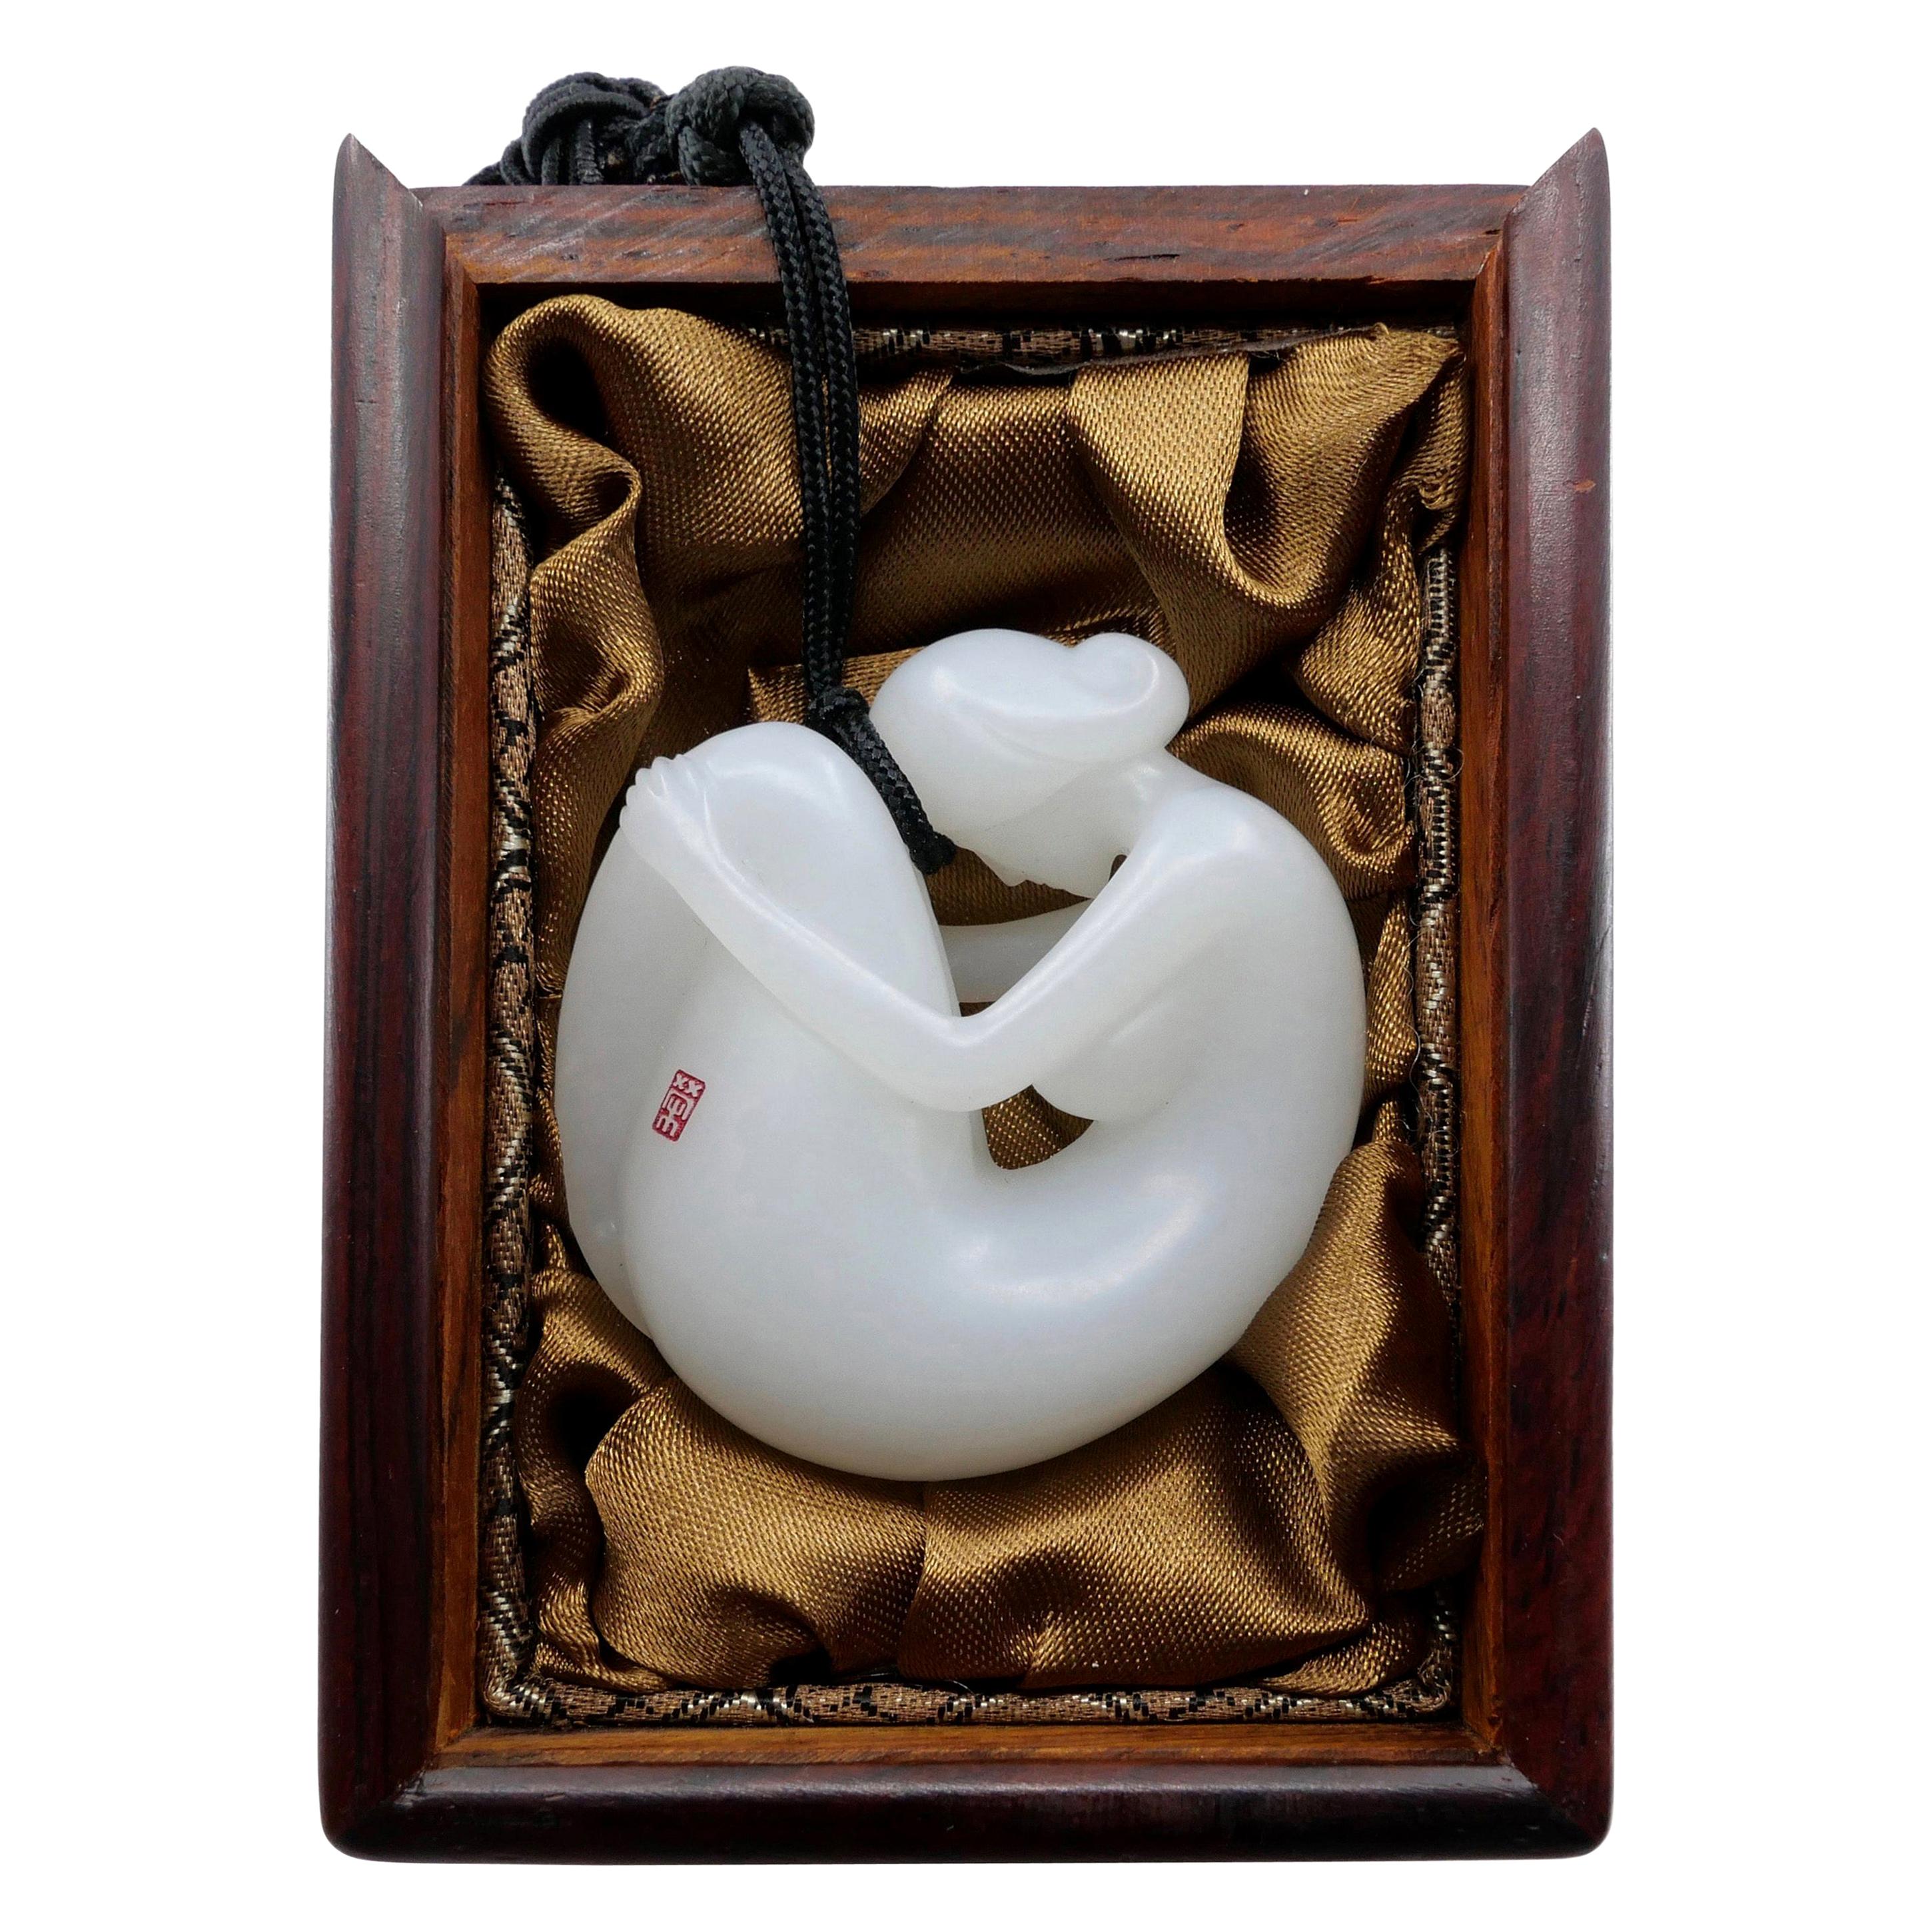 De véritable jade blanc cassé Mutton certifié néphrite naturelle sculpté par le maître 于士榮榮.